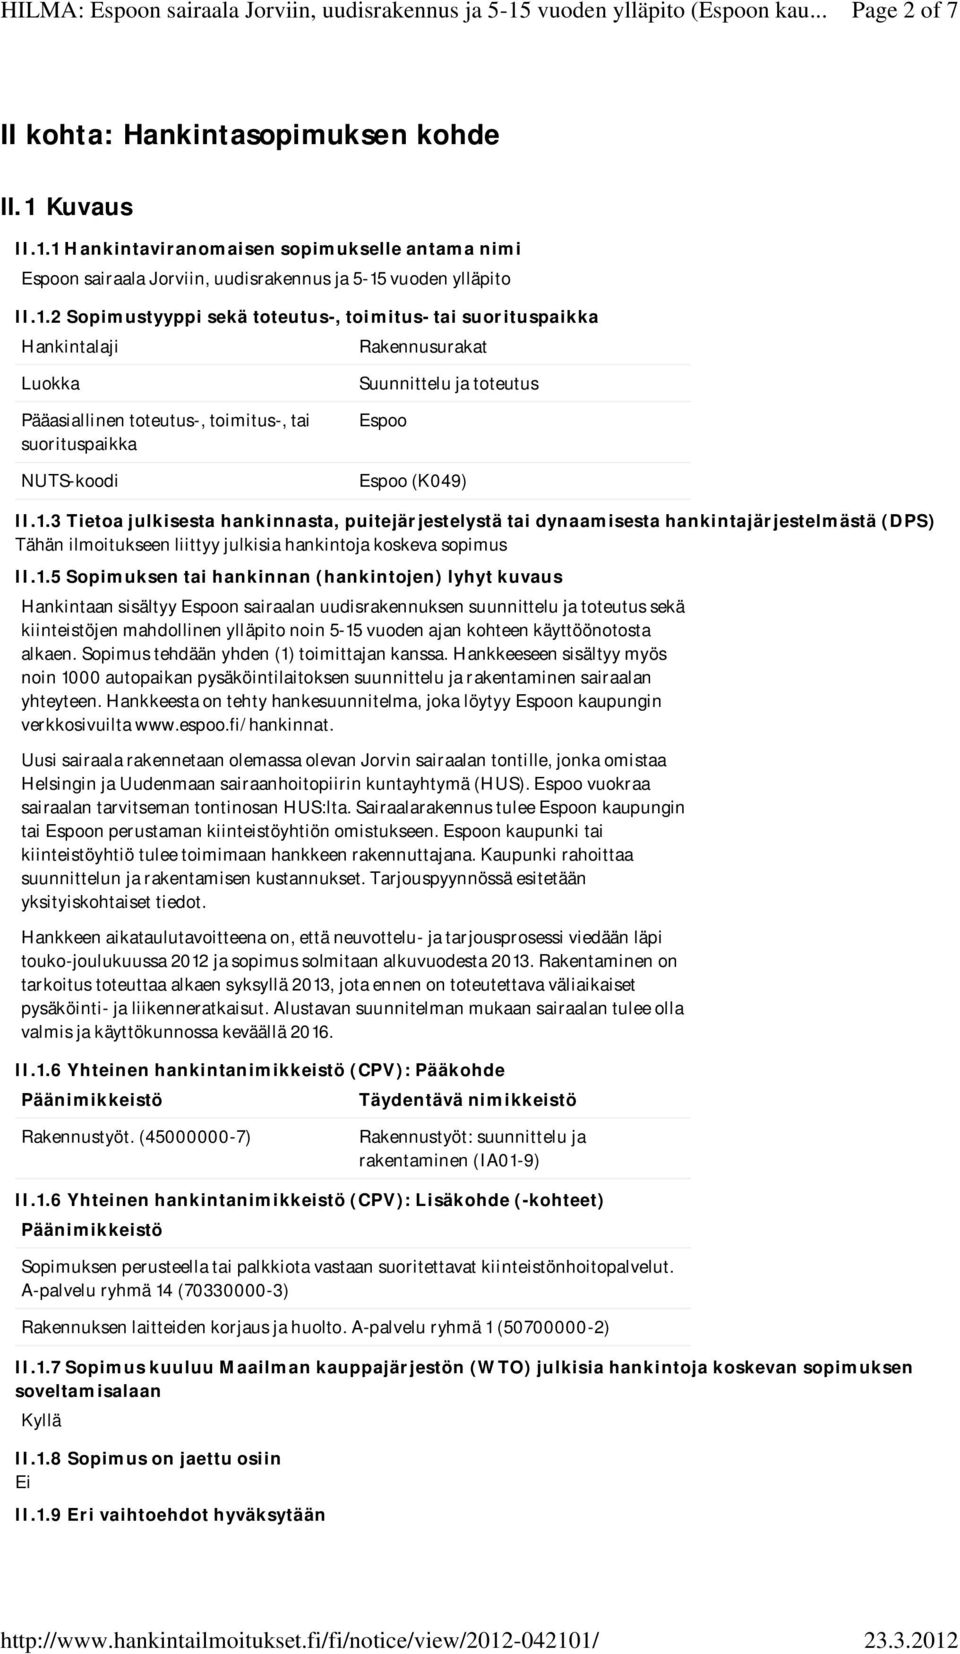 1 Hankintaviranomaisen sopimukselle antama nimi Espoon sairaala Jorviin, uudisrakennus ja 5-15 vuoden ylläpito II.1.2 Sopimustyyppi sekä toteutus-, toimitus- tai suorituspaikka Hankintalaji